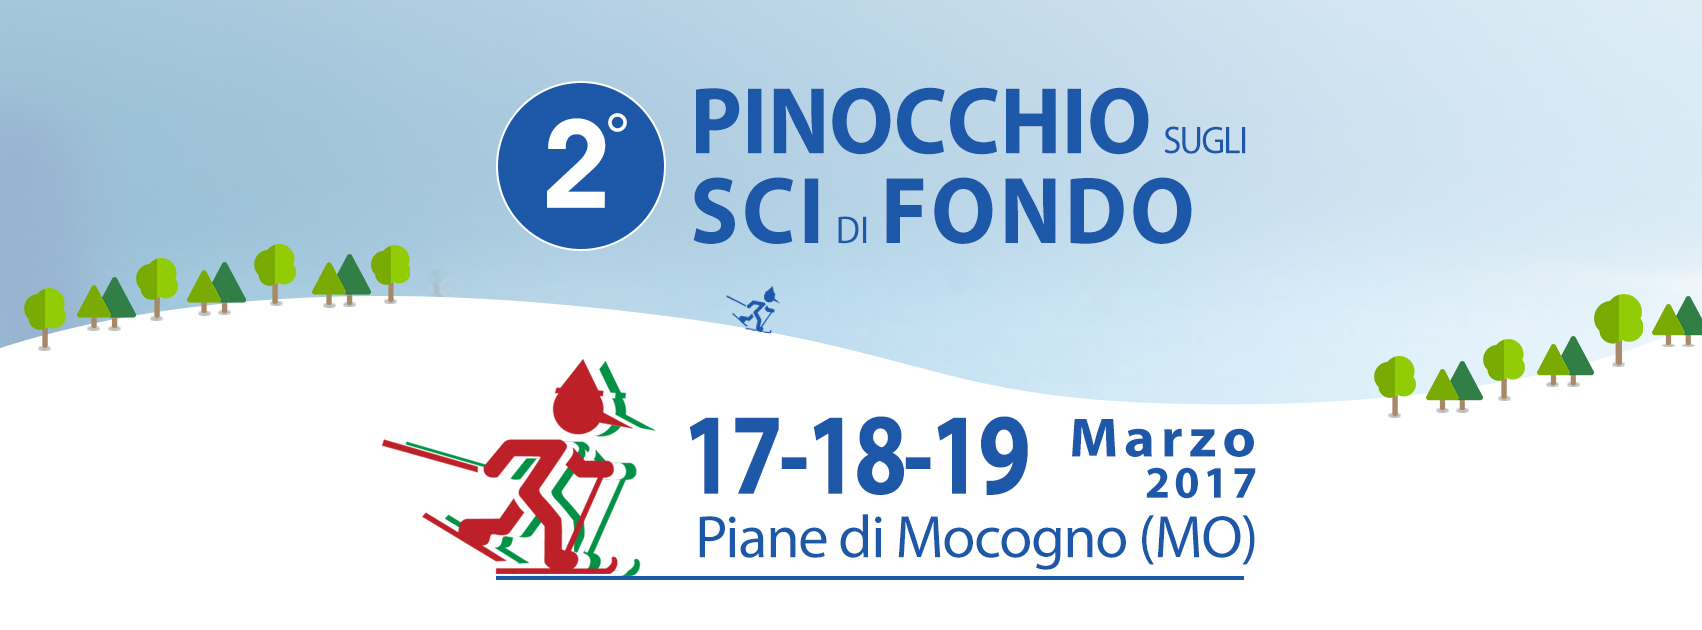 2° Trofeo Pinocchio Sugli Sci di Fondo:17-19 marzo 2017